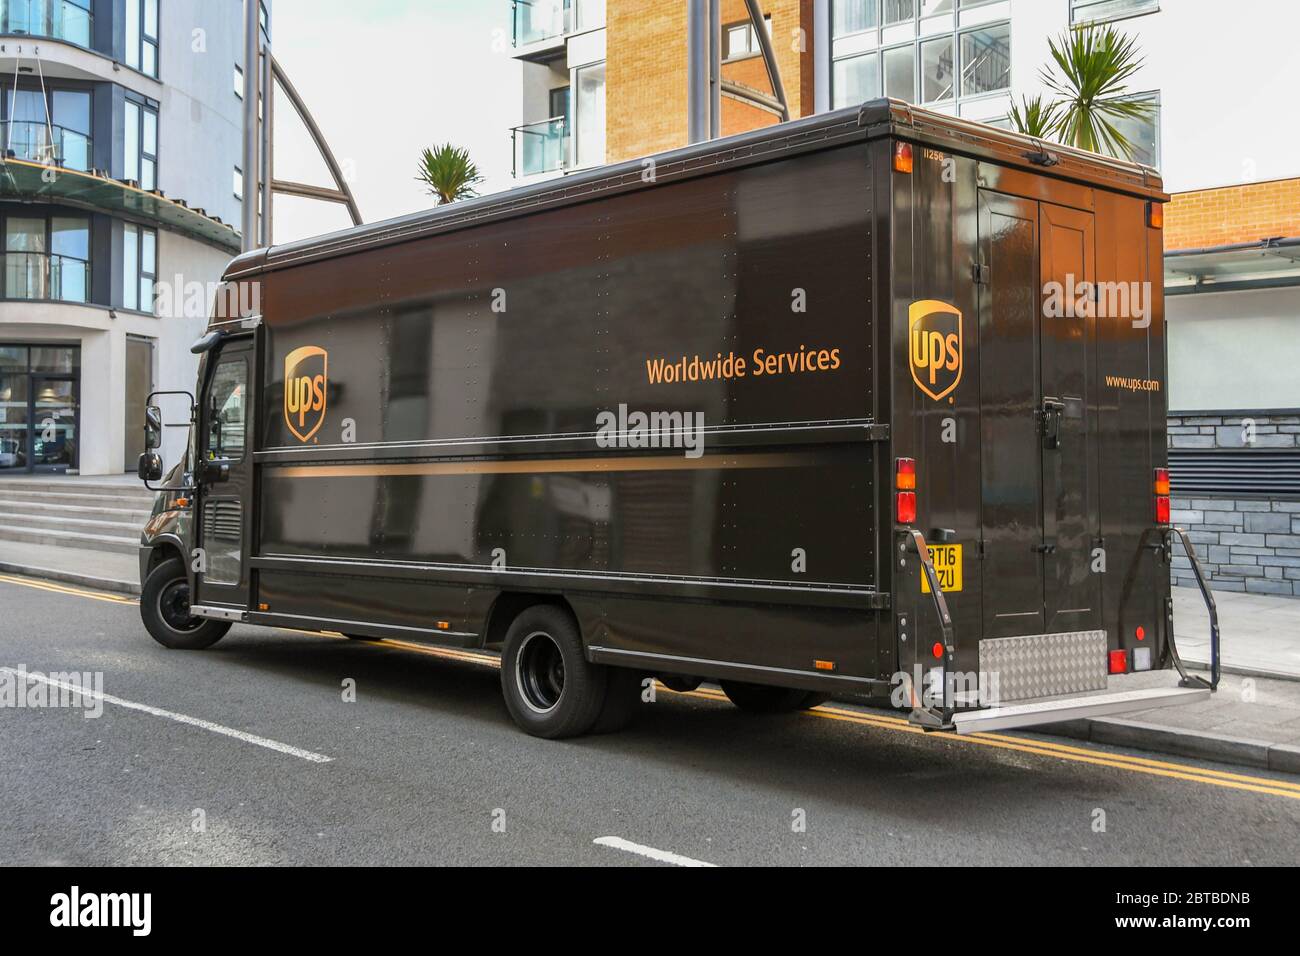 SWANSEA, WALES - OKTOBER 2018: UPS van parkte in Swansea Marina und lieferte Pakete. Stockfoto